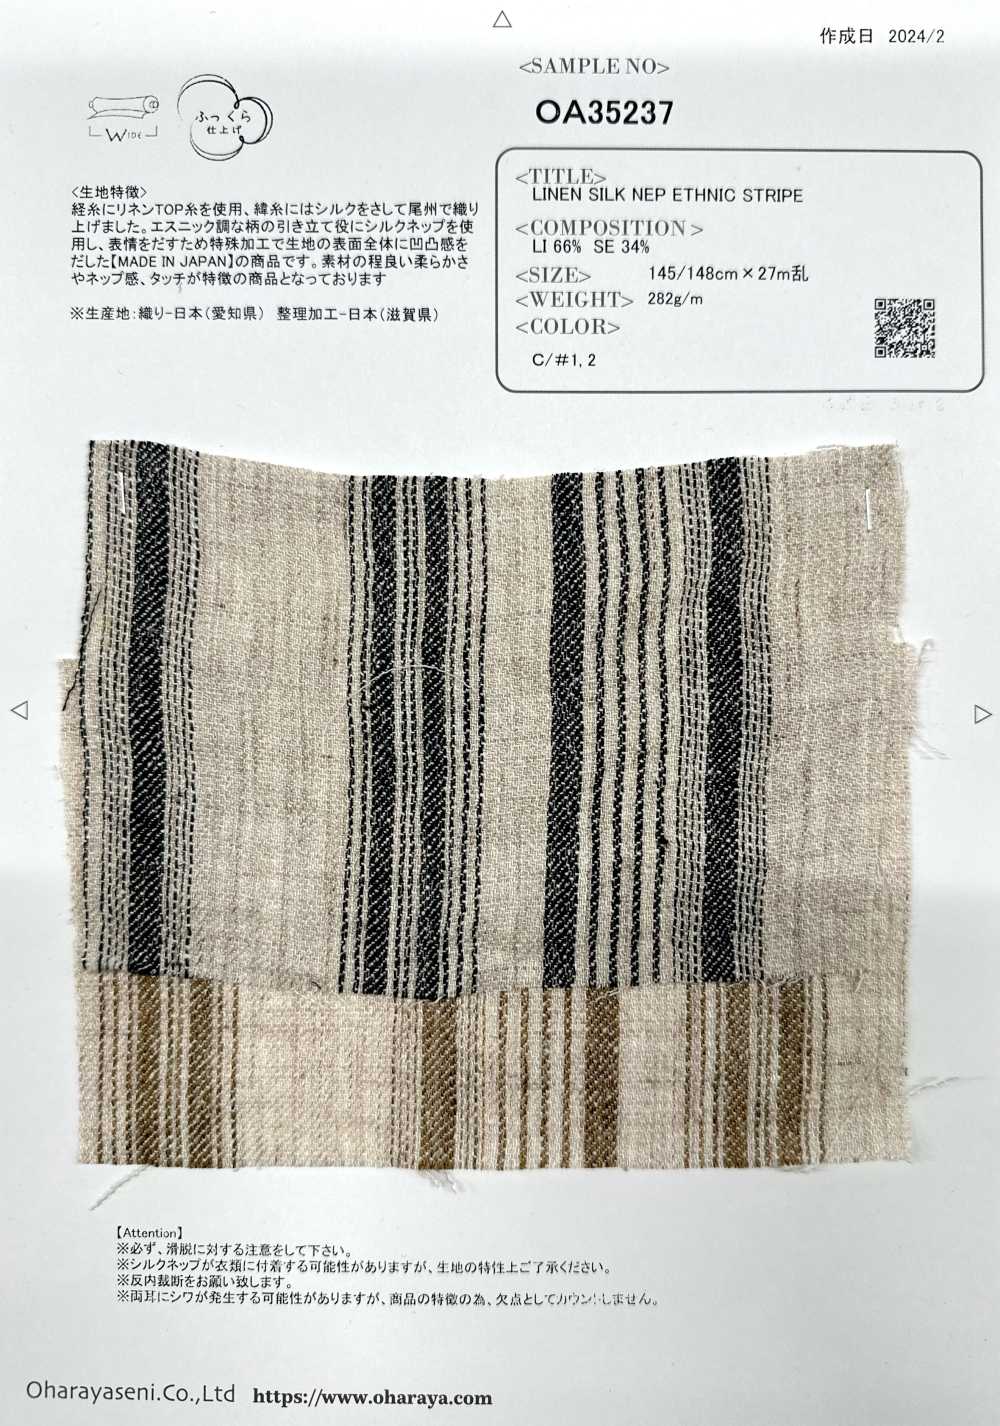 OA35237 Supima Algodão E Linho Francês × SEDA 2/1 Super Sarja Acabamento Sedoso[Têxtil / Tecido] Oharayaseni